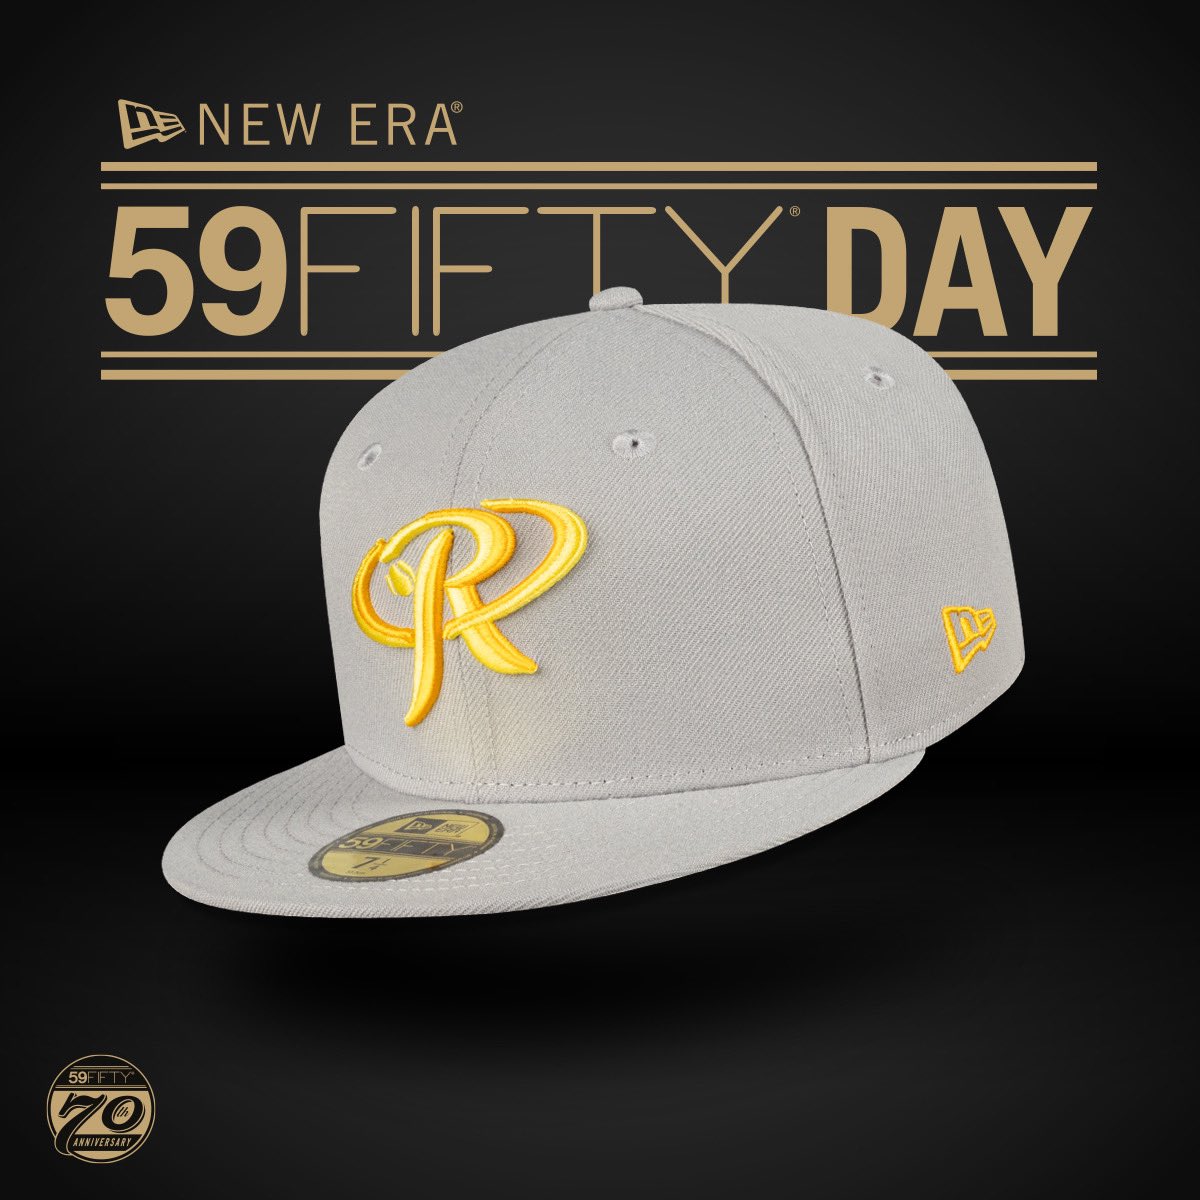 ¡Feliz #59FiftyDay! ⭐️ Hoy la gorra icónica de @NewEraMx cumple 70 años desde su existencia 😍 ¡Por muchos años más juntos dentro del diamante! 🚂 #MiNewEra #NewEraMexico